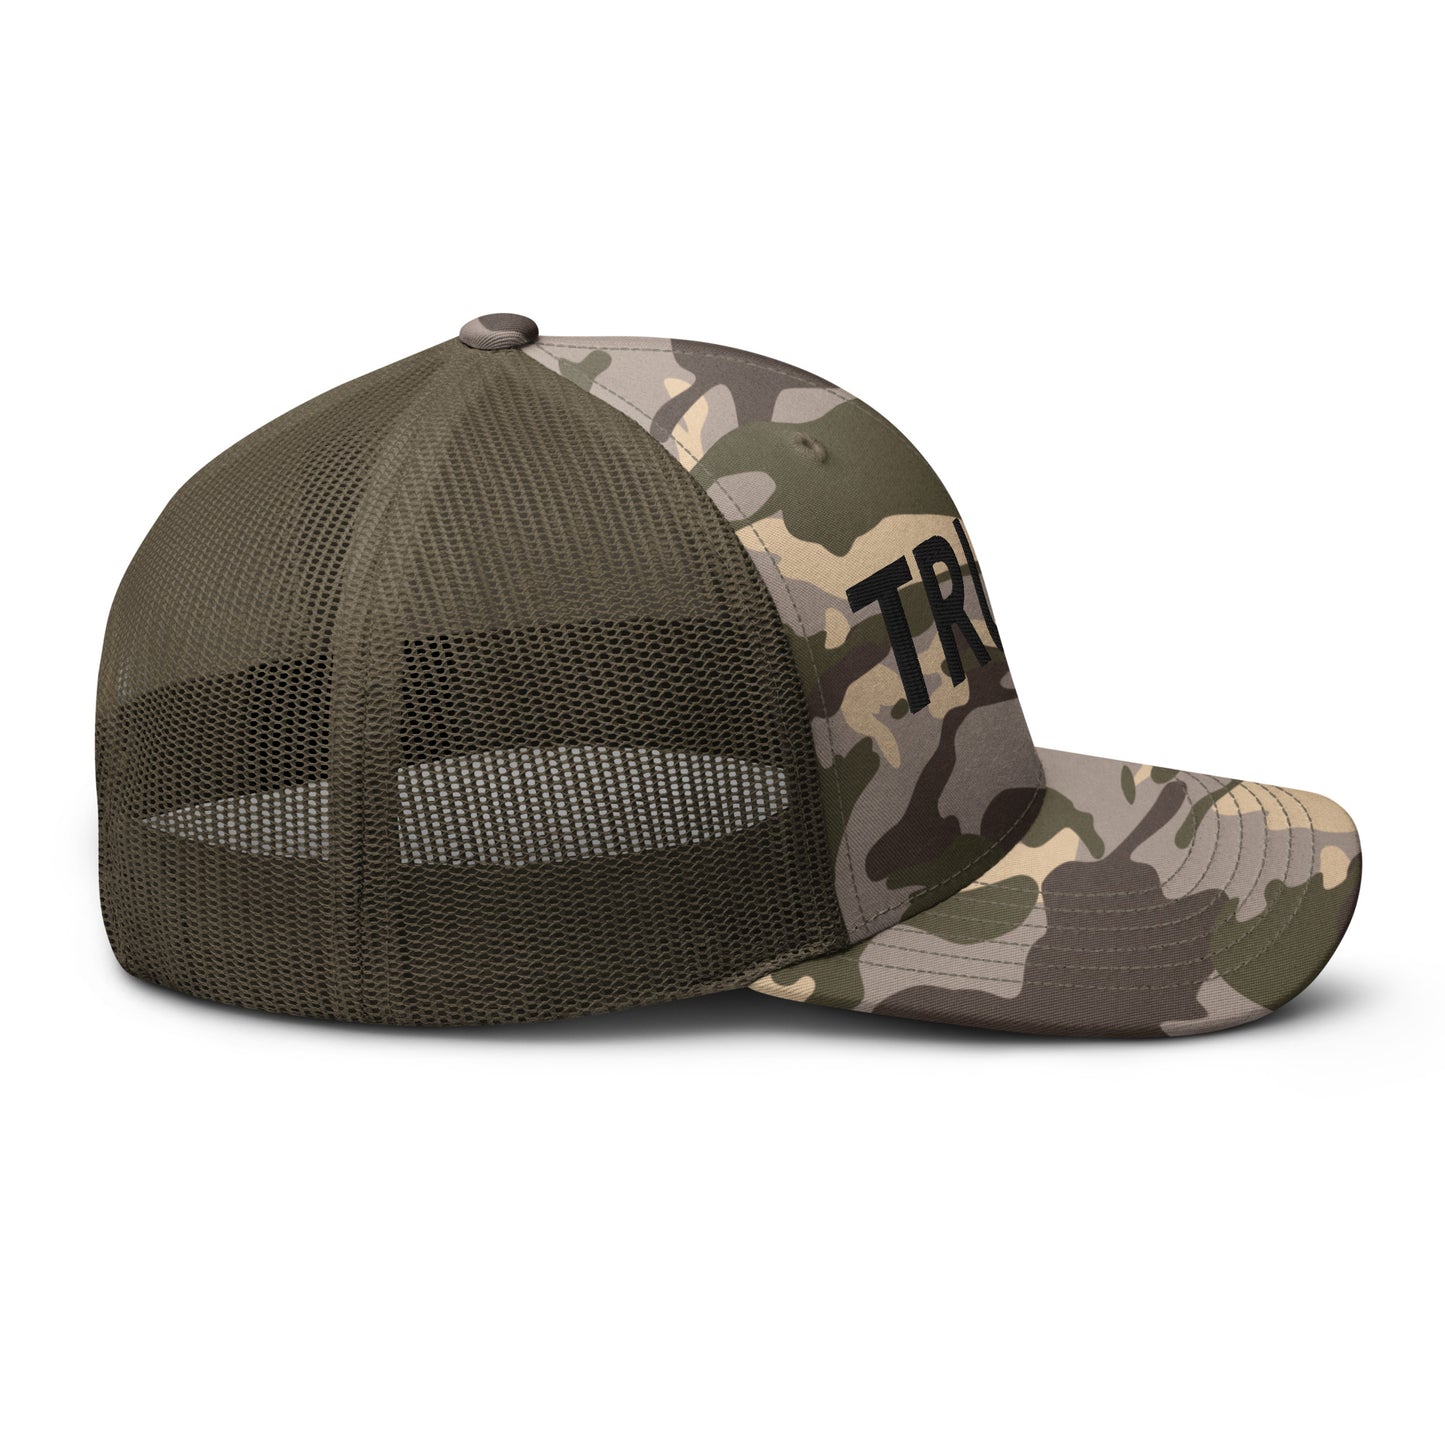 Truth Warrior Camouflage trucker hat